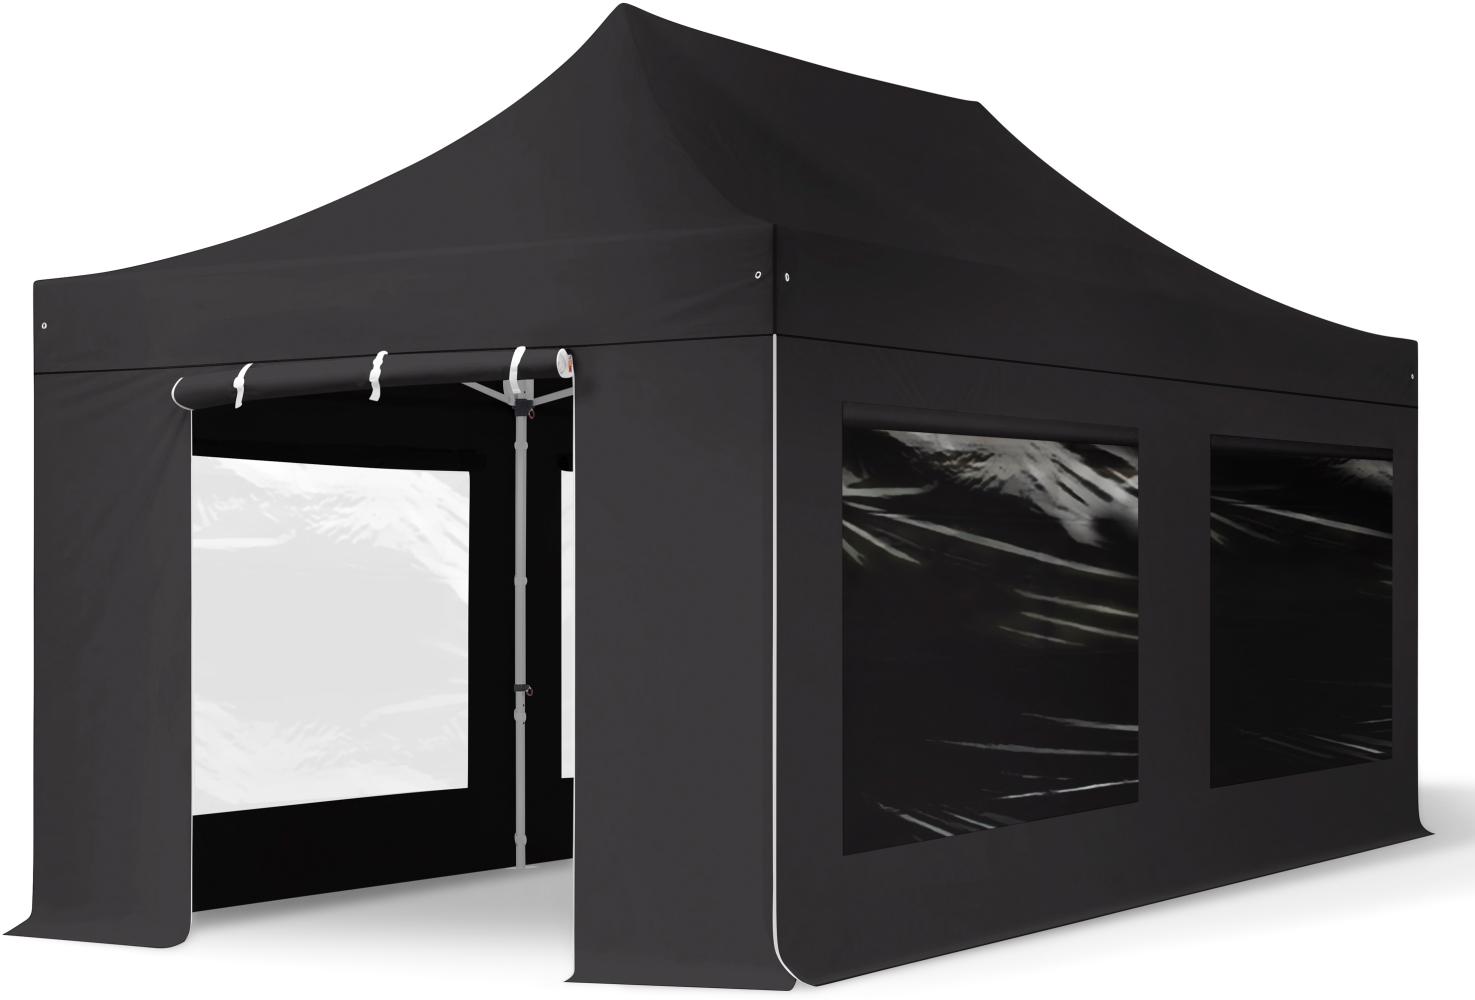 3x6 m Faltpavillon PROFESSIONAL Alu 40mm, Seitenteile mit Panoramafenstern, schwarz Bild 1